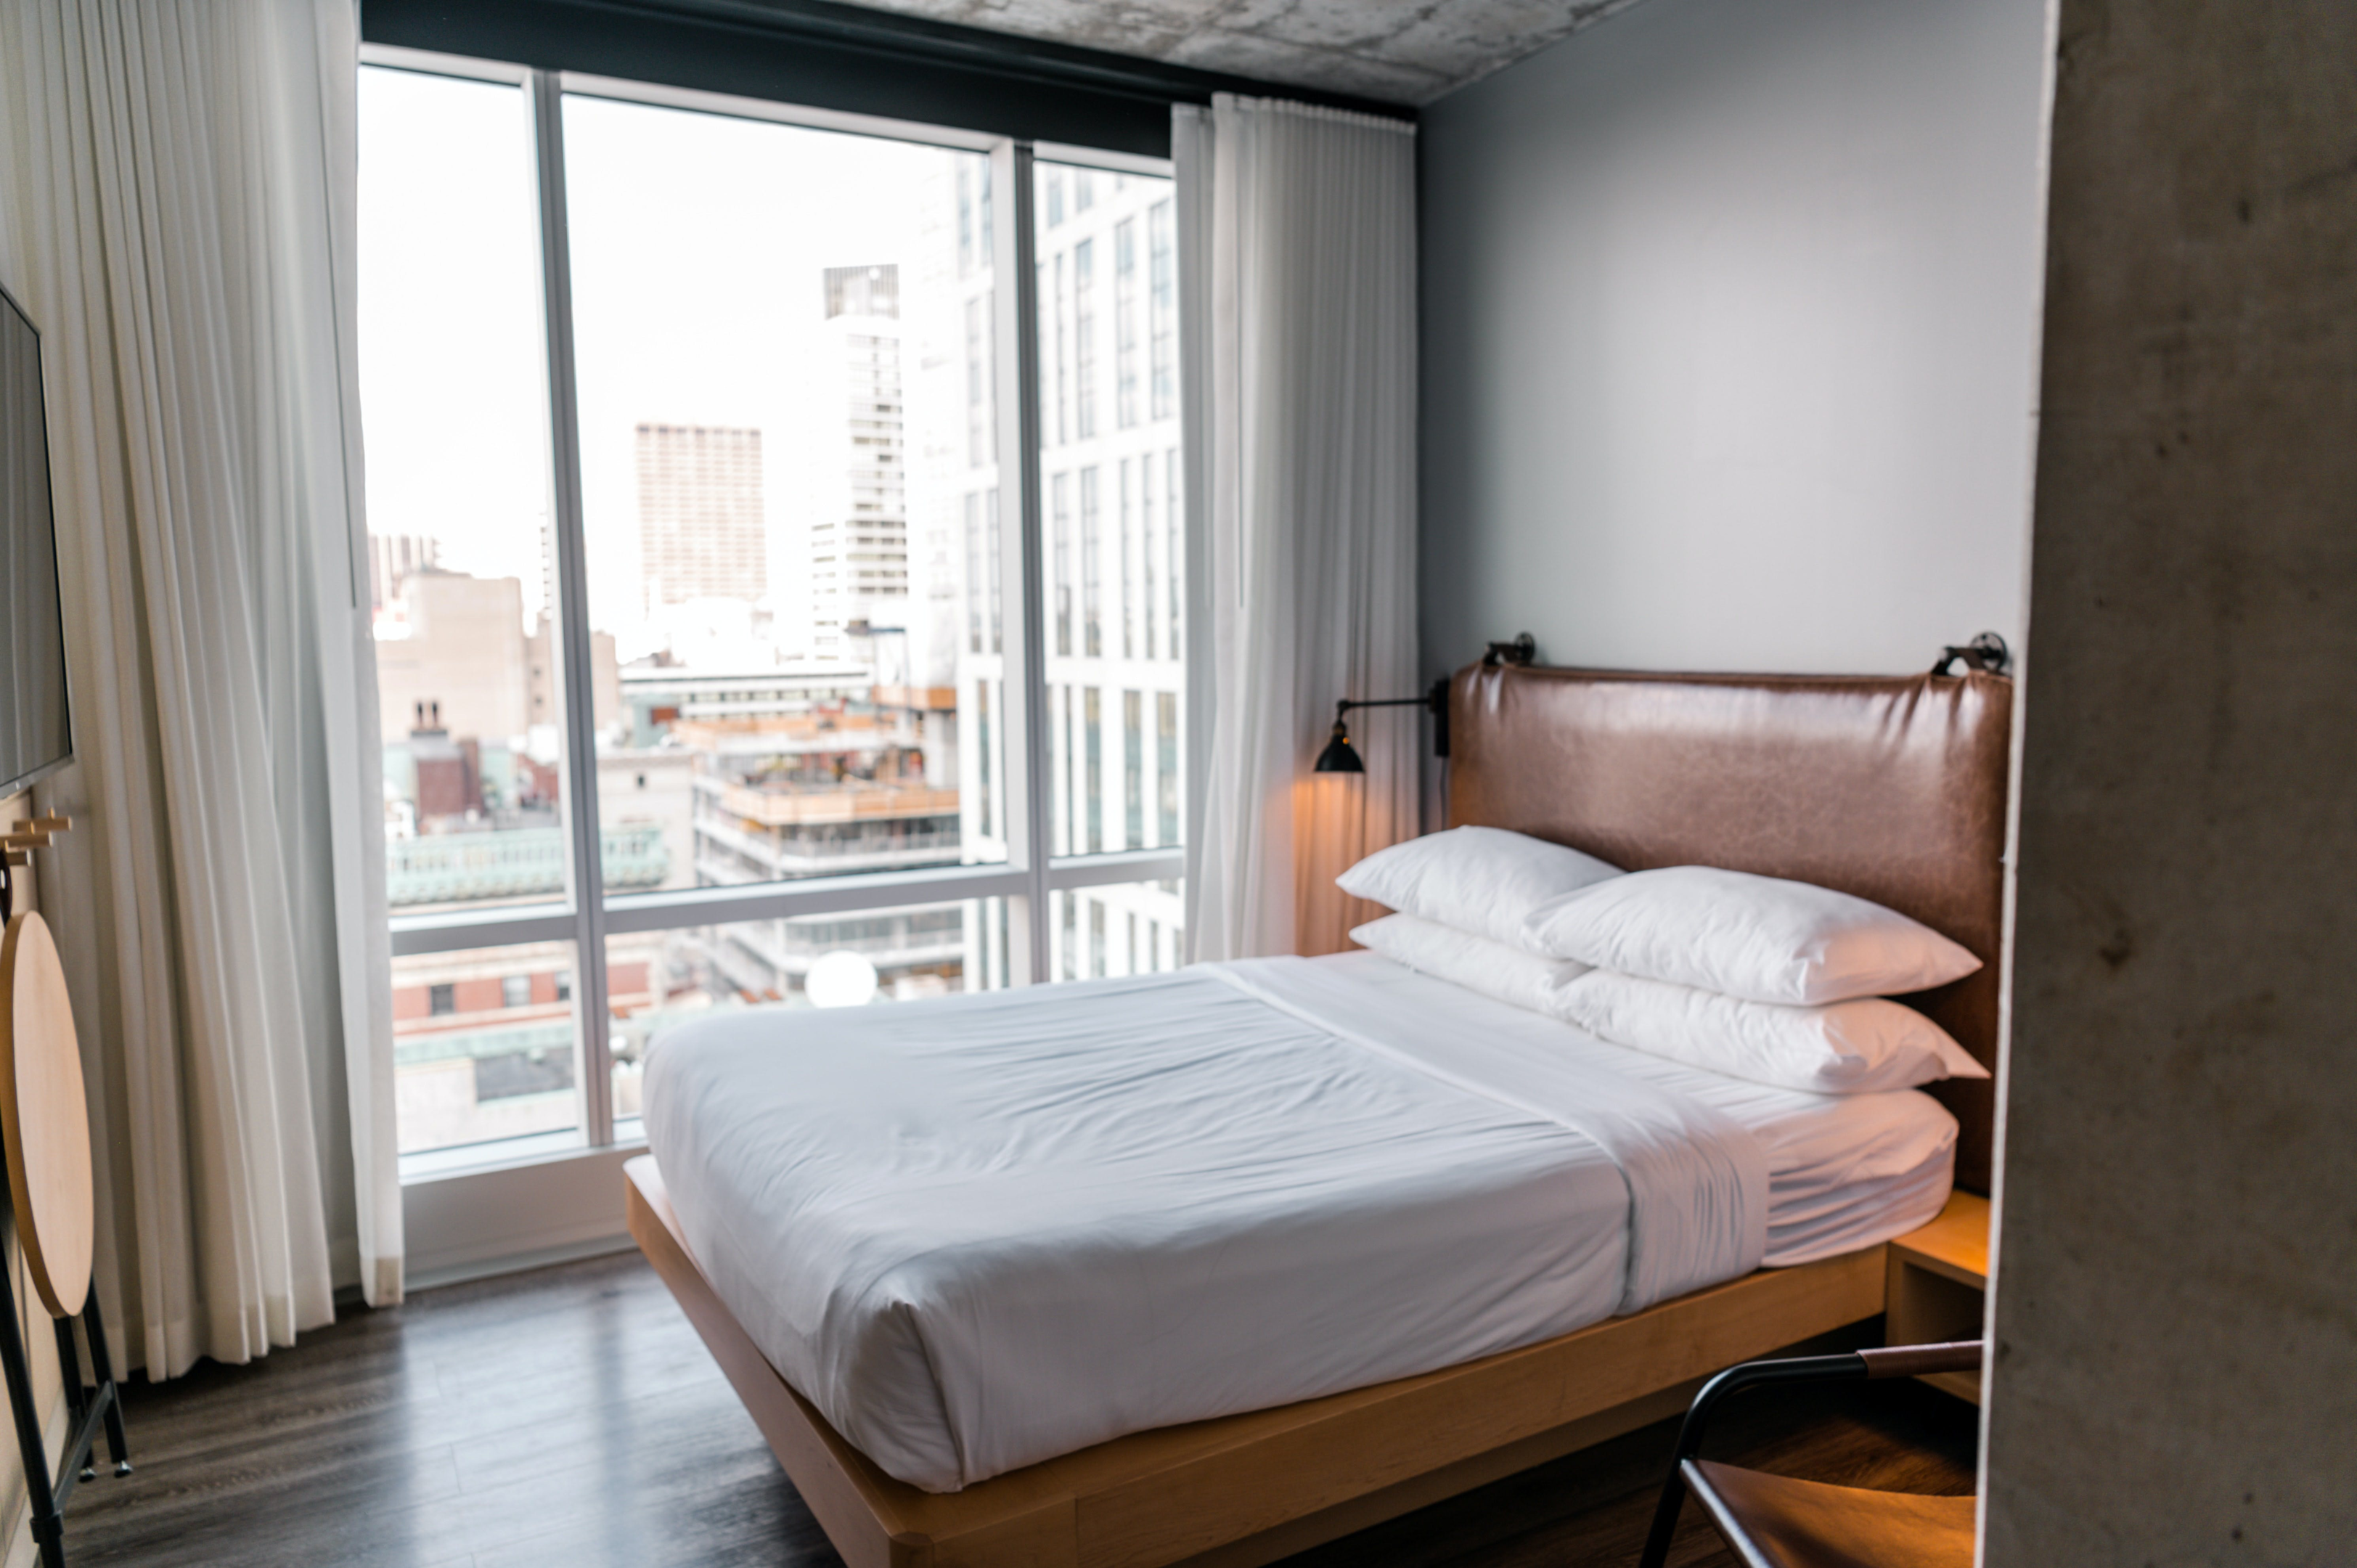 Anuncios de alojamientos con gestión automatizada, viviendas Airbnb con experiencia autónoma.